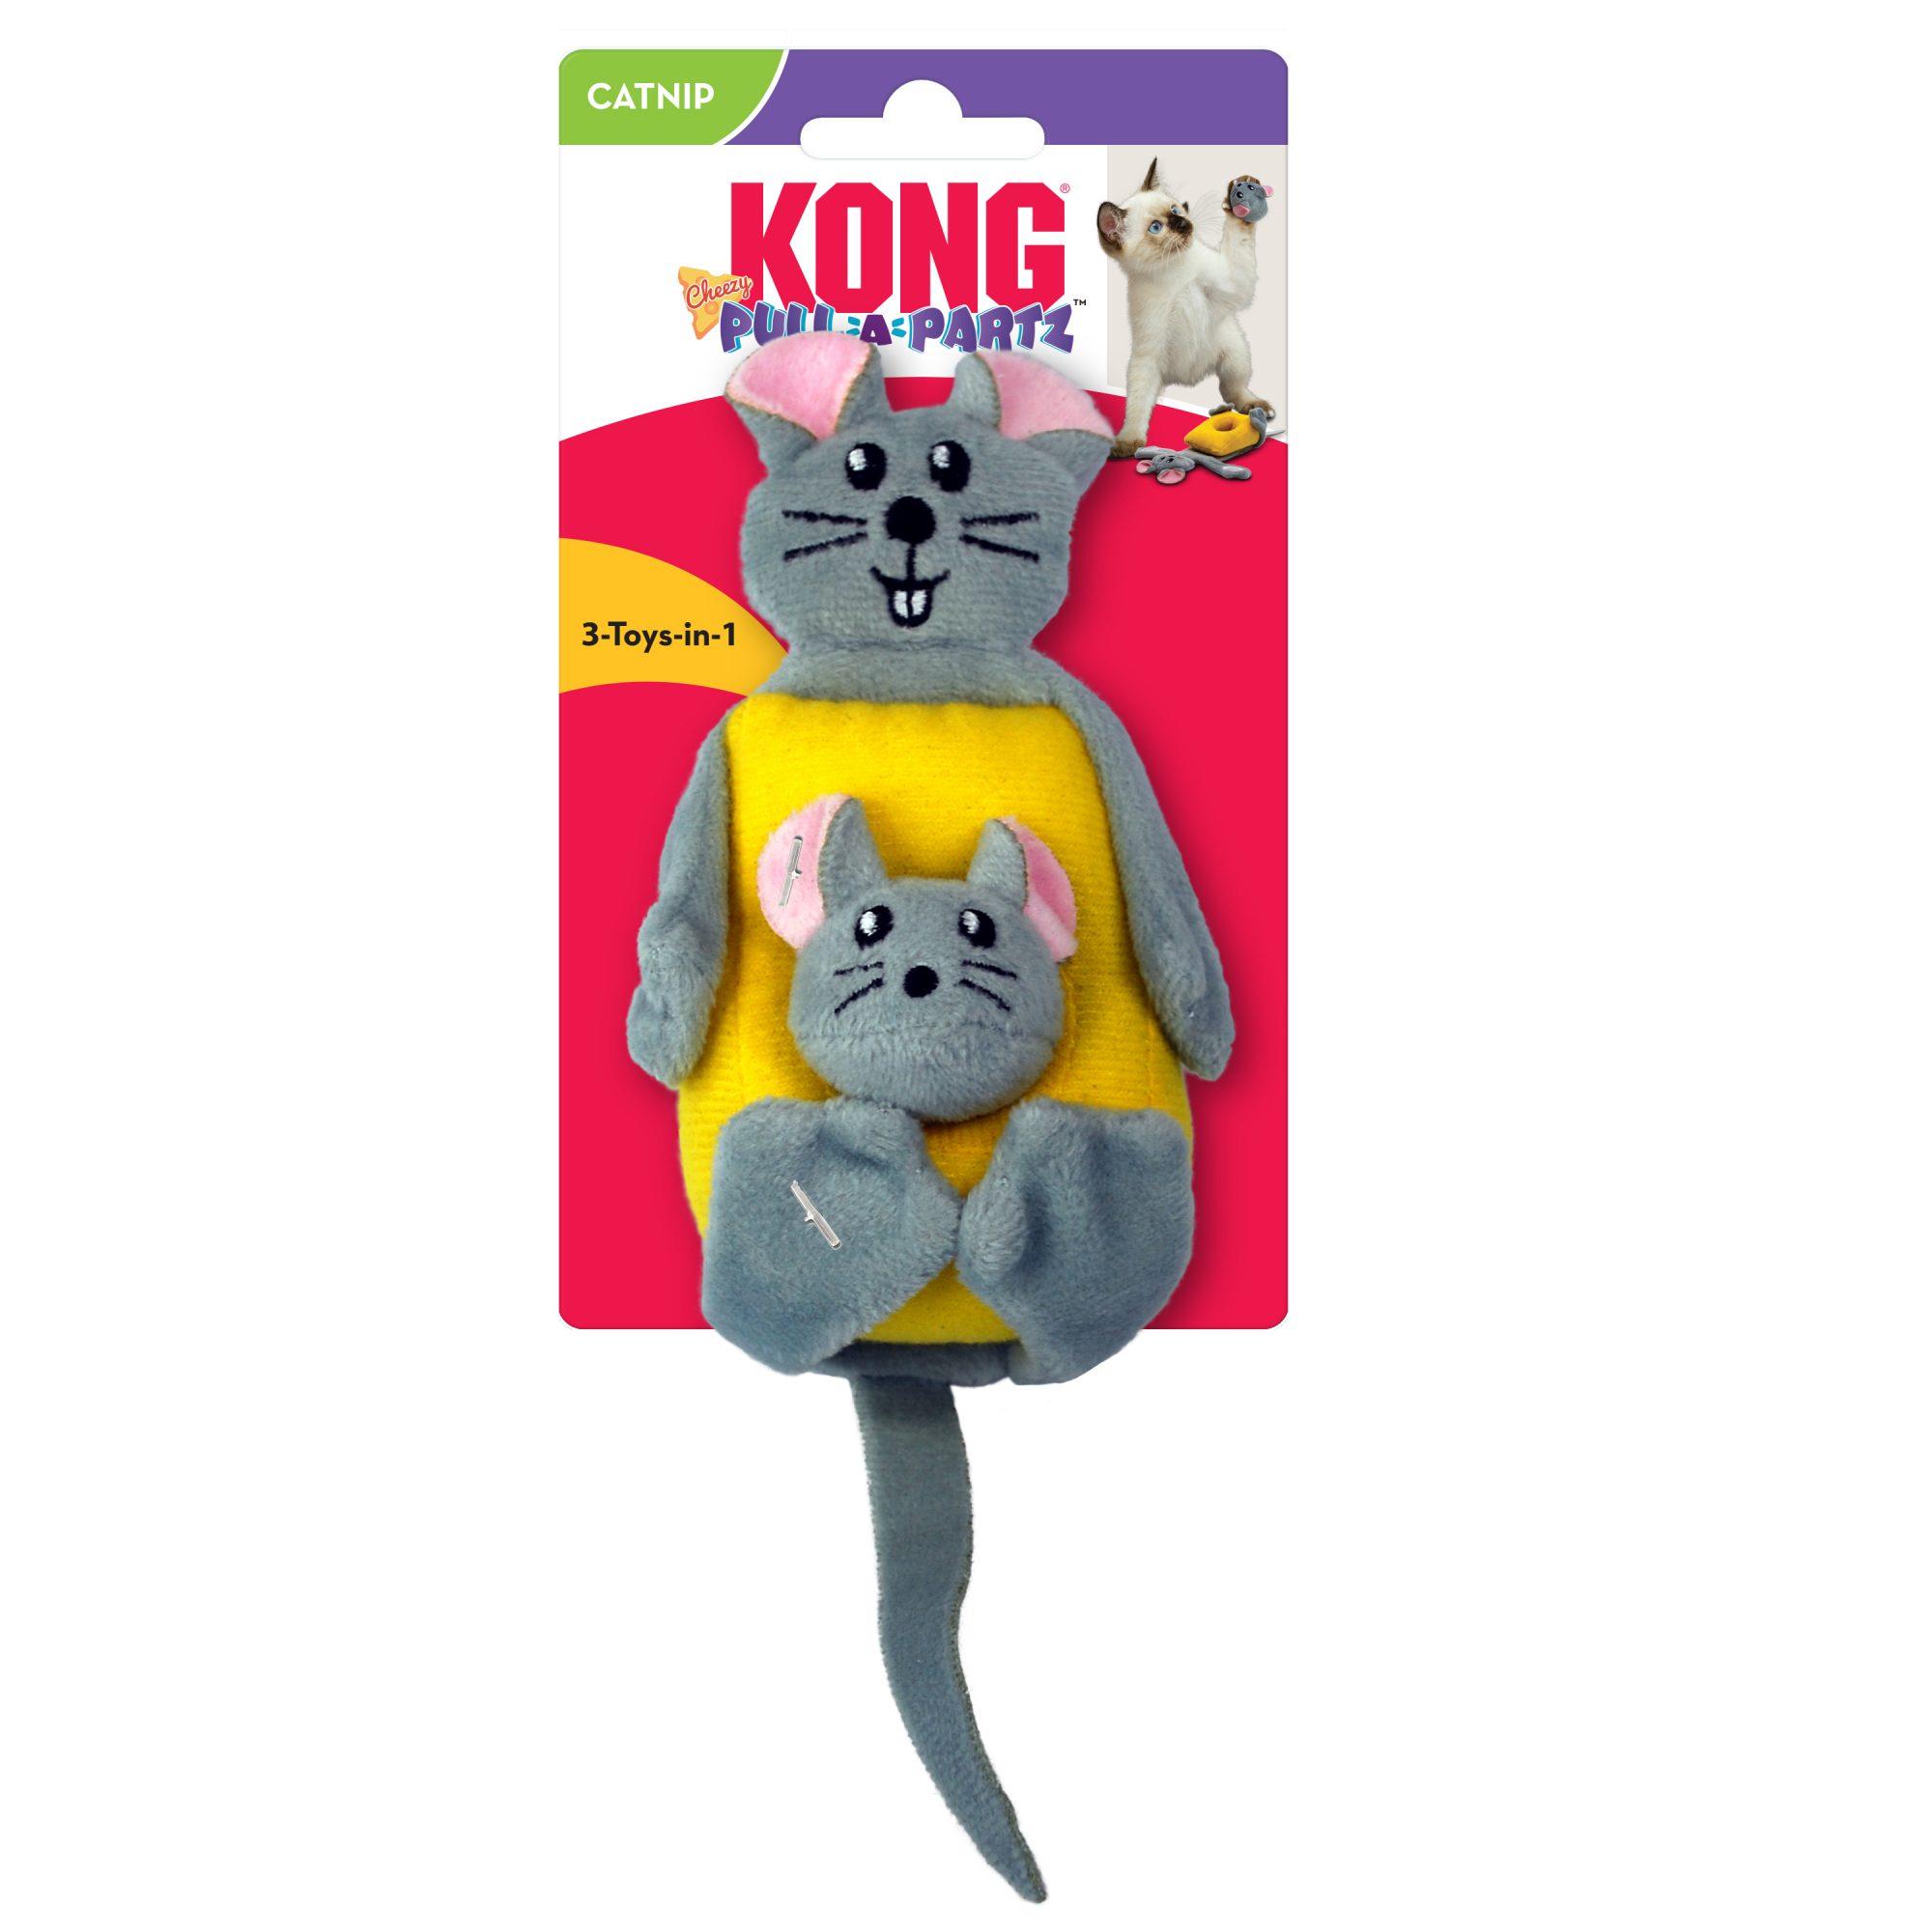 KONG Pull-a-partz Cheezy para gato